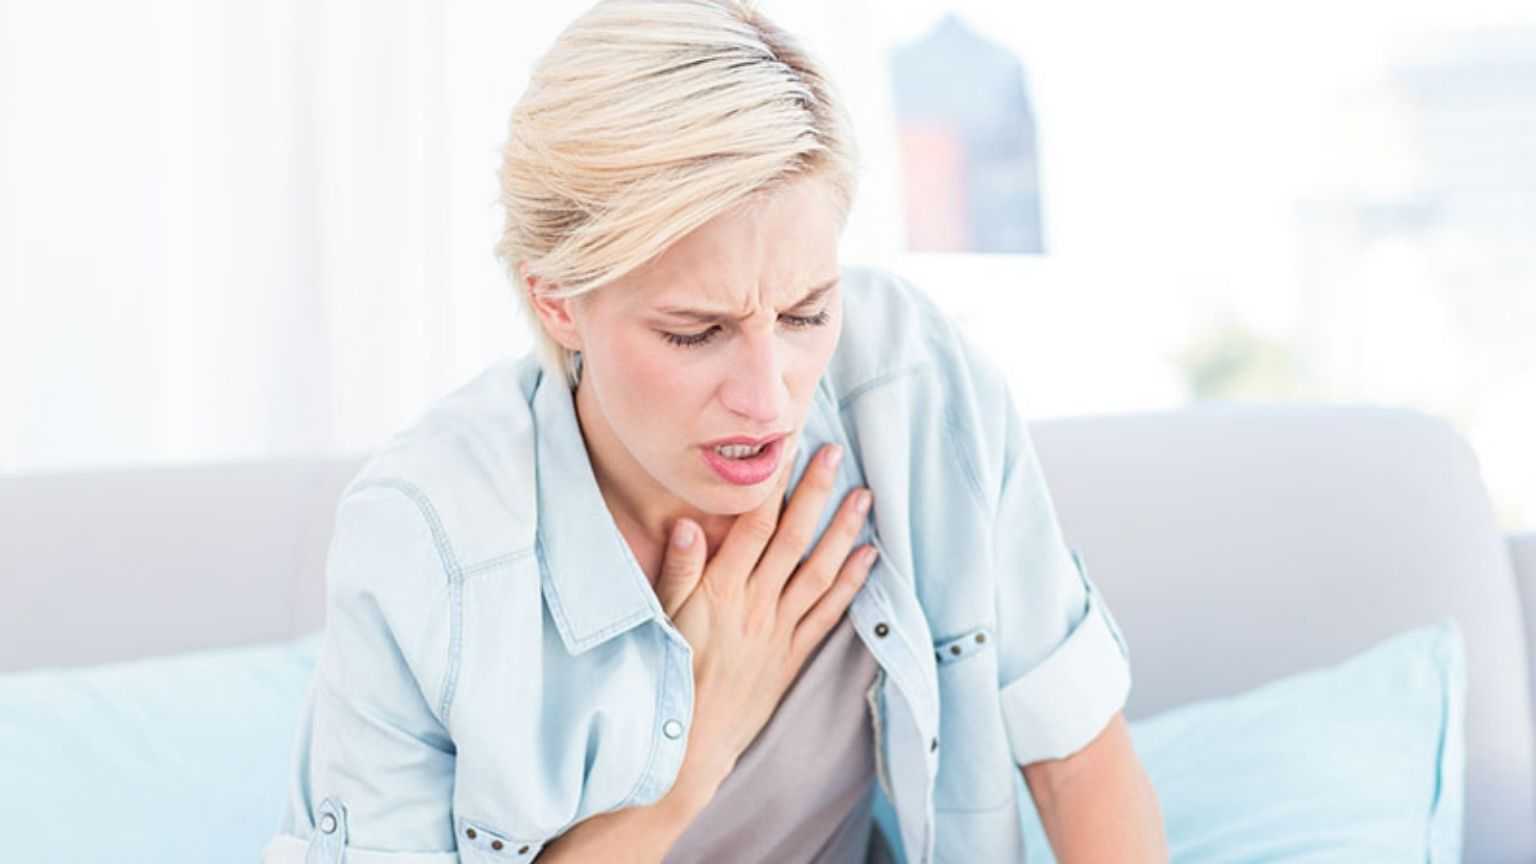 دمہ کی علامات، تشخیص اور علاج جانئے